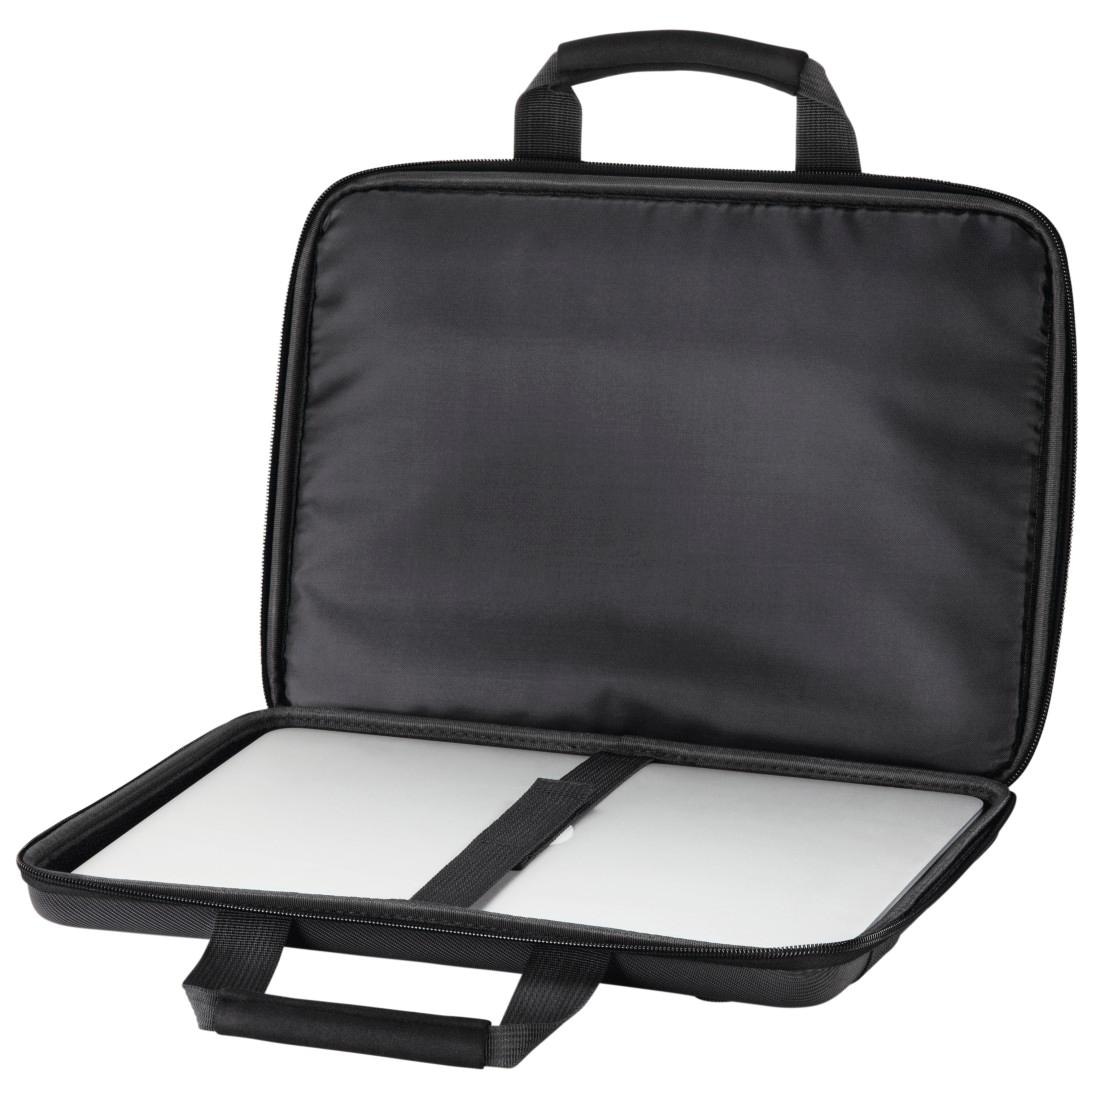 Hama Laptoptasche »Laptop-Tasche "Nizza", bis 44 cm (17,3"), Schwarz, Notebooktasche«